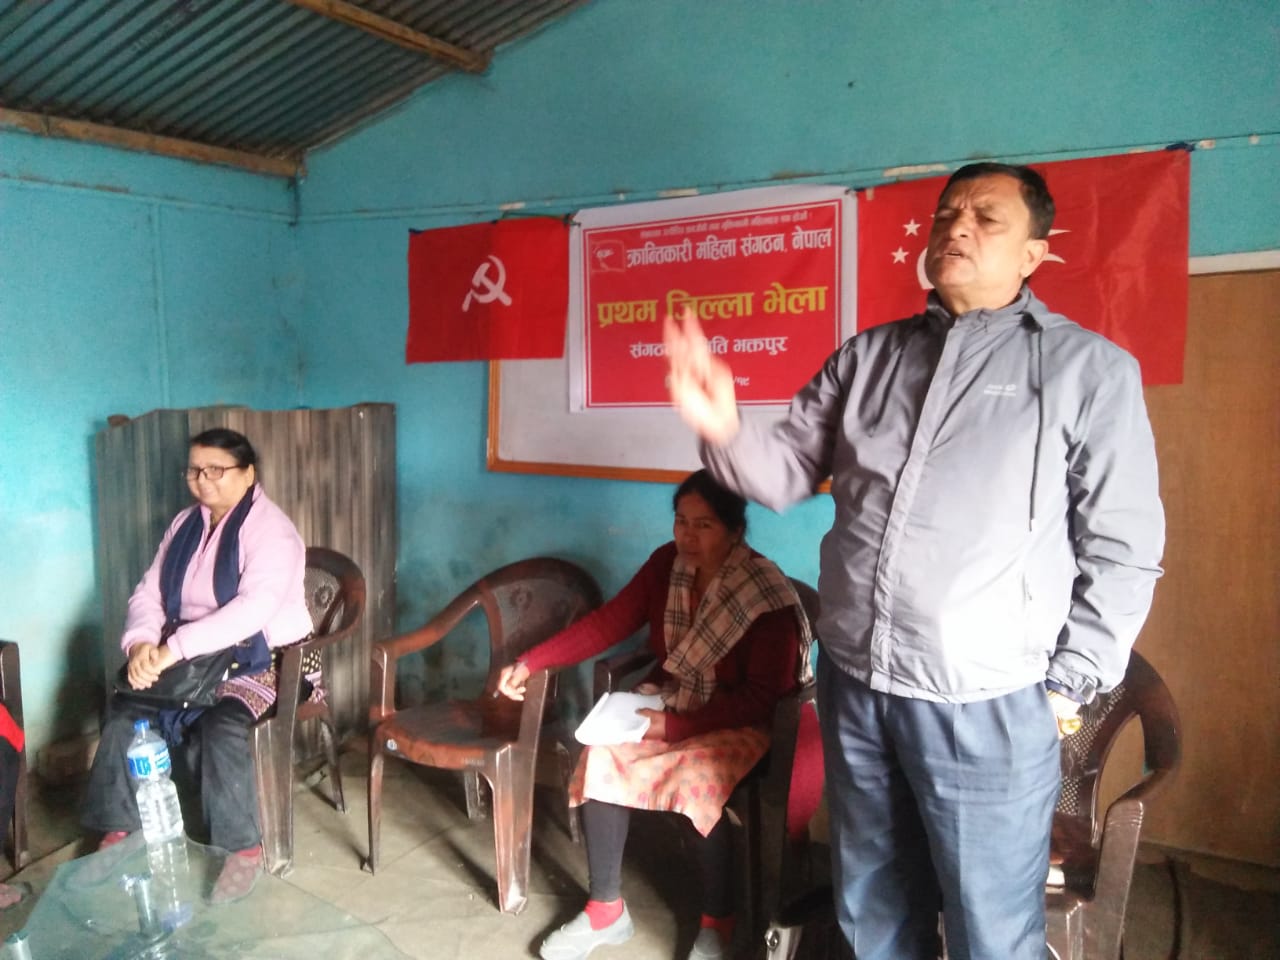 क्रान्तिकारी महिला सङ्गठन नेपाल भक्तपुरको प्रथम जिल्ला भेला सम्पन्न